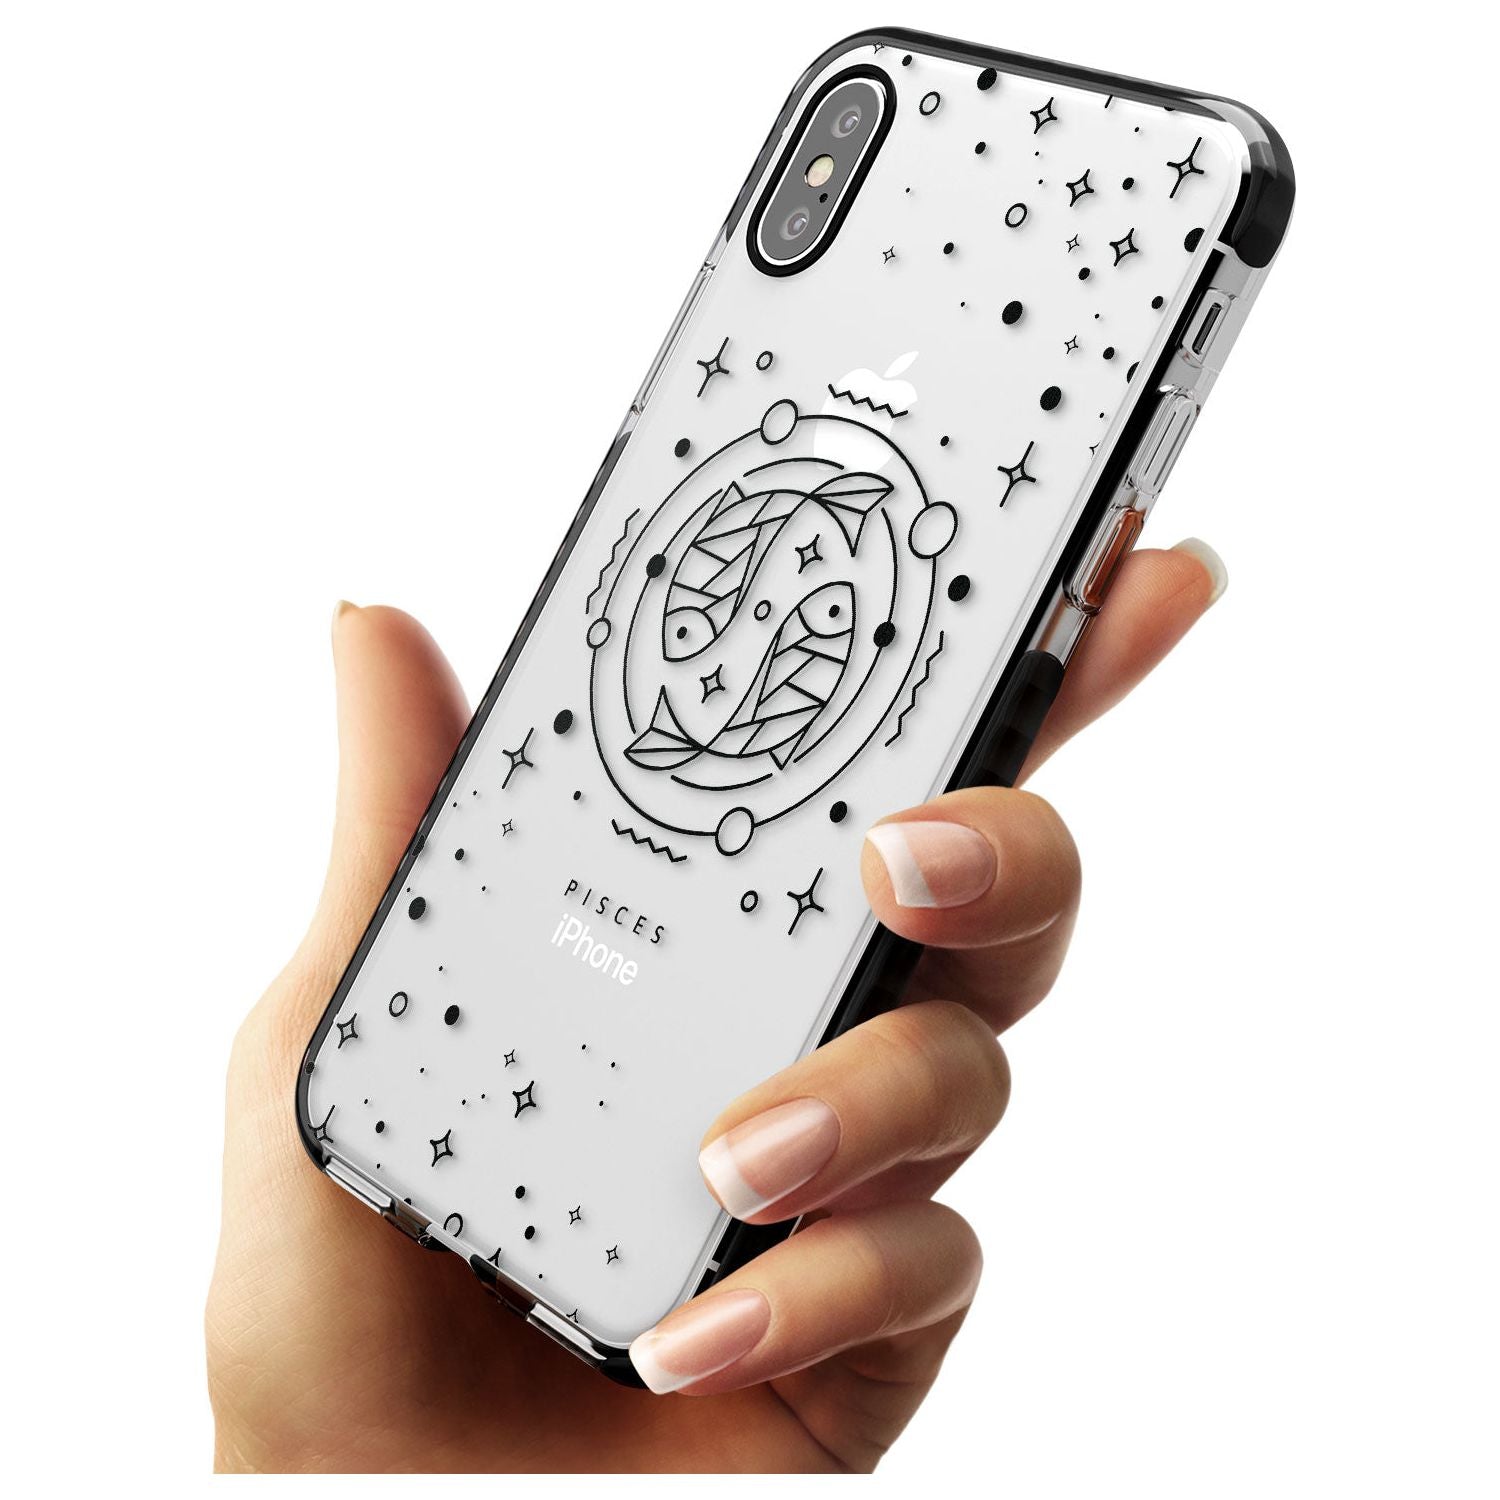 Pisces Emblem - Transparent Design Black Impact Phone Case for iPhone X XS Max XR